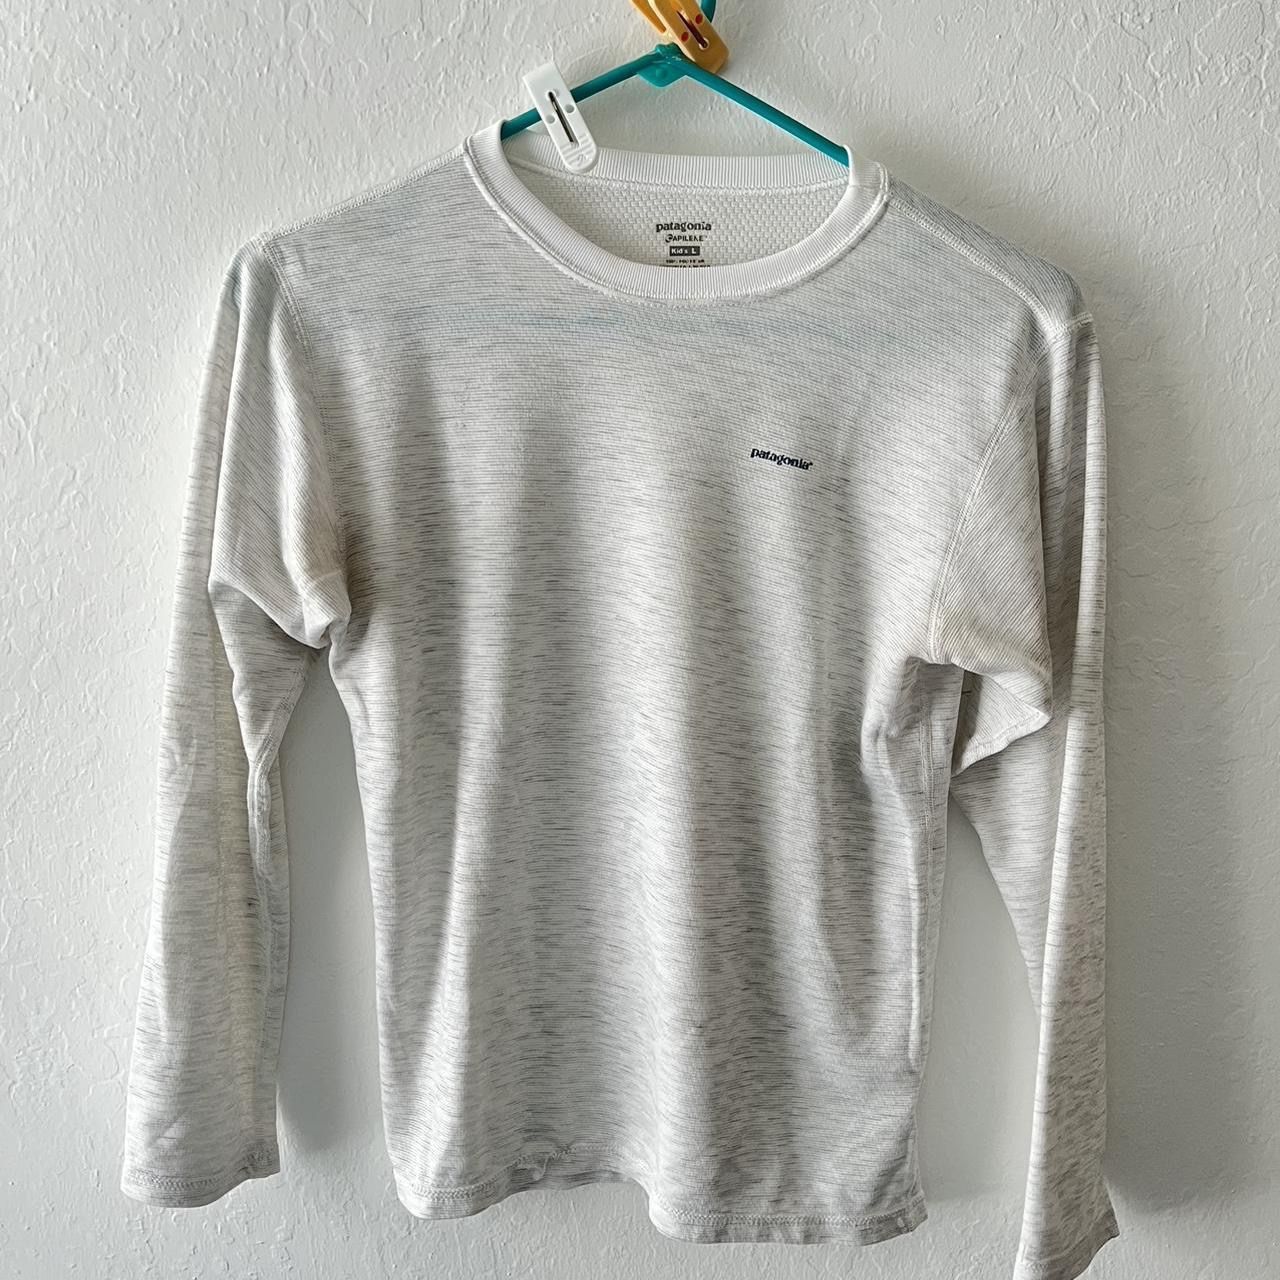 Patagonia White Long Sleeve Crewneck Shirt